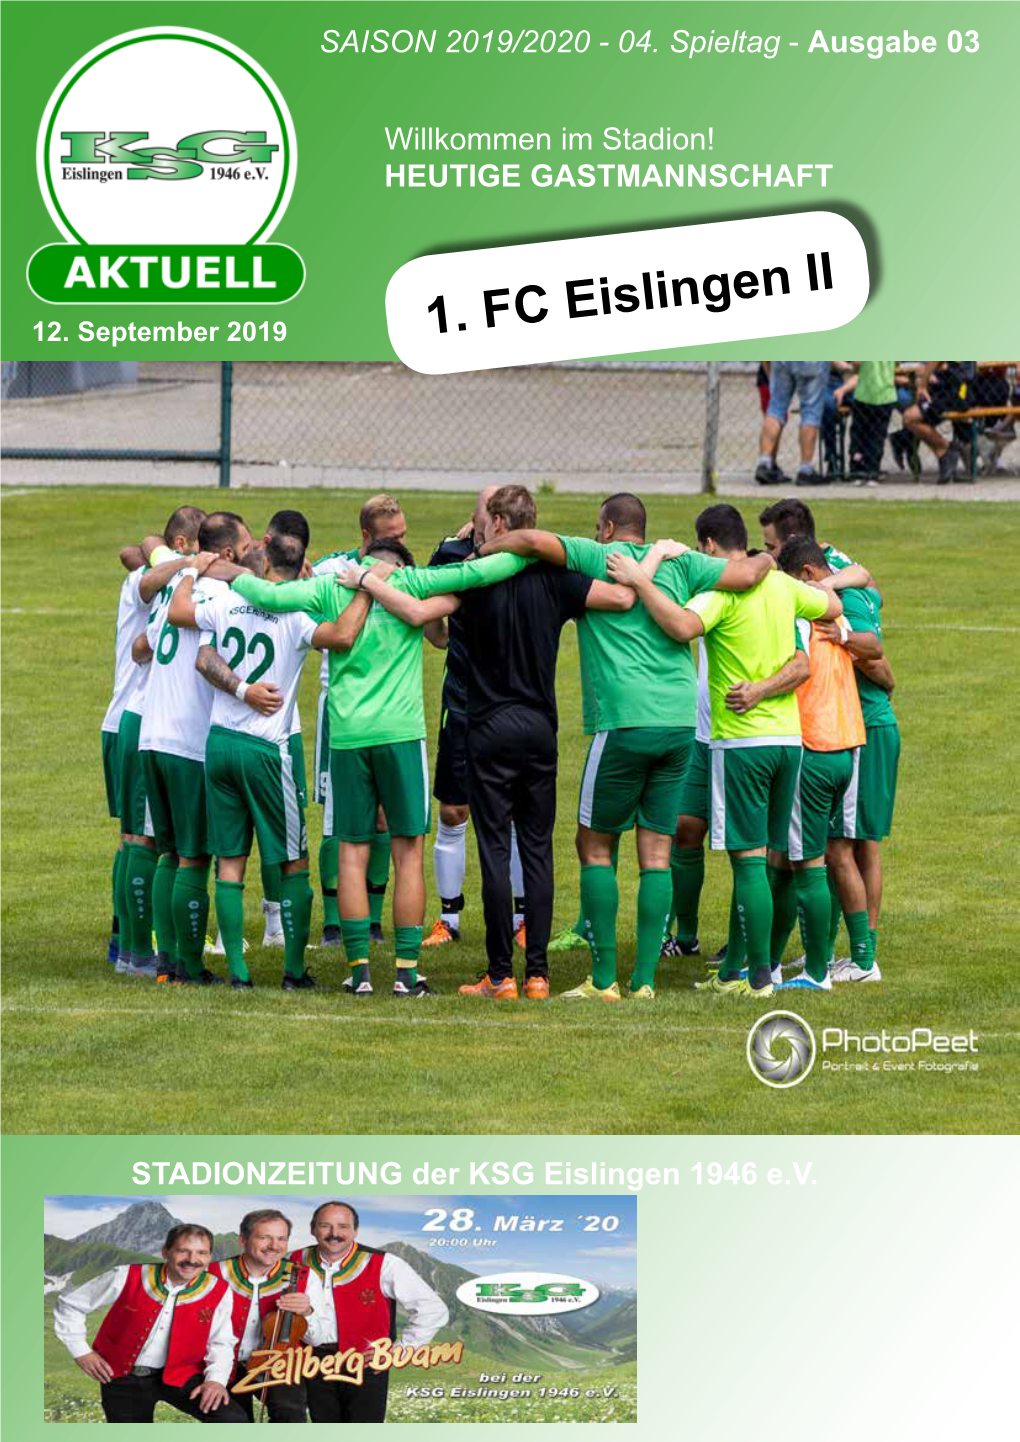 1. FC Eislingen II